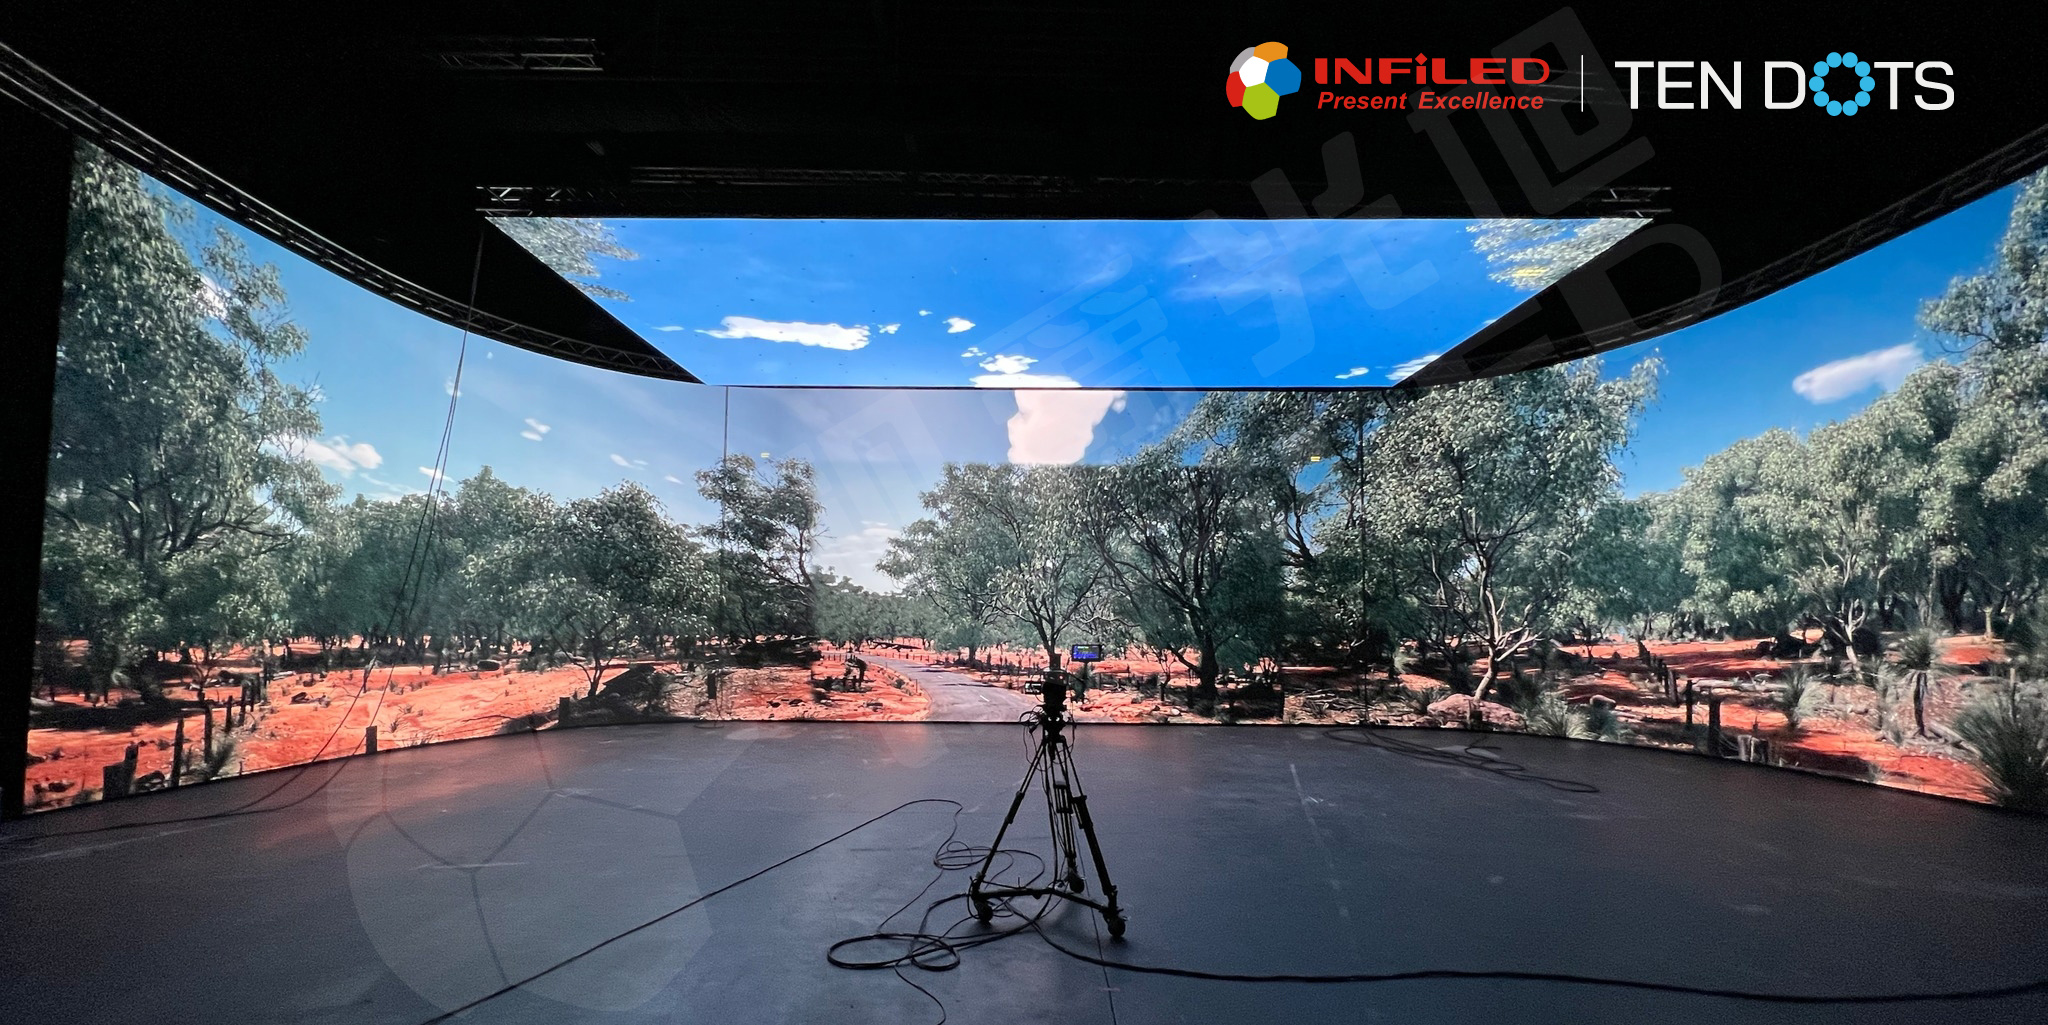 2022年视爵光旭为Ten Dots打造的XR虚拟拍摄屏幕